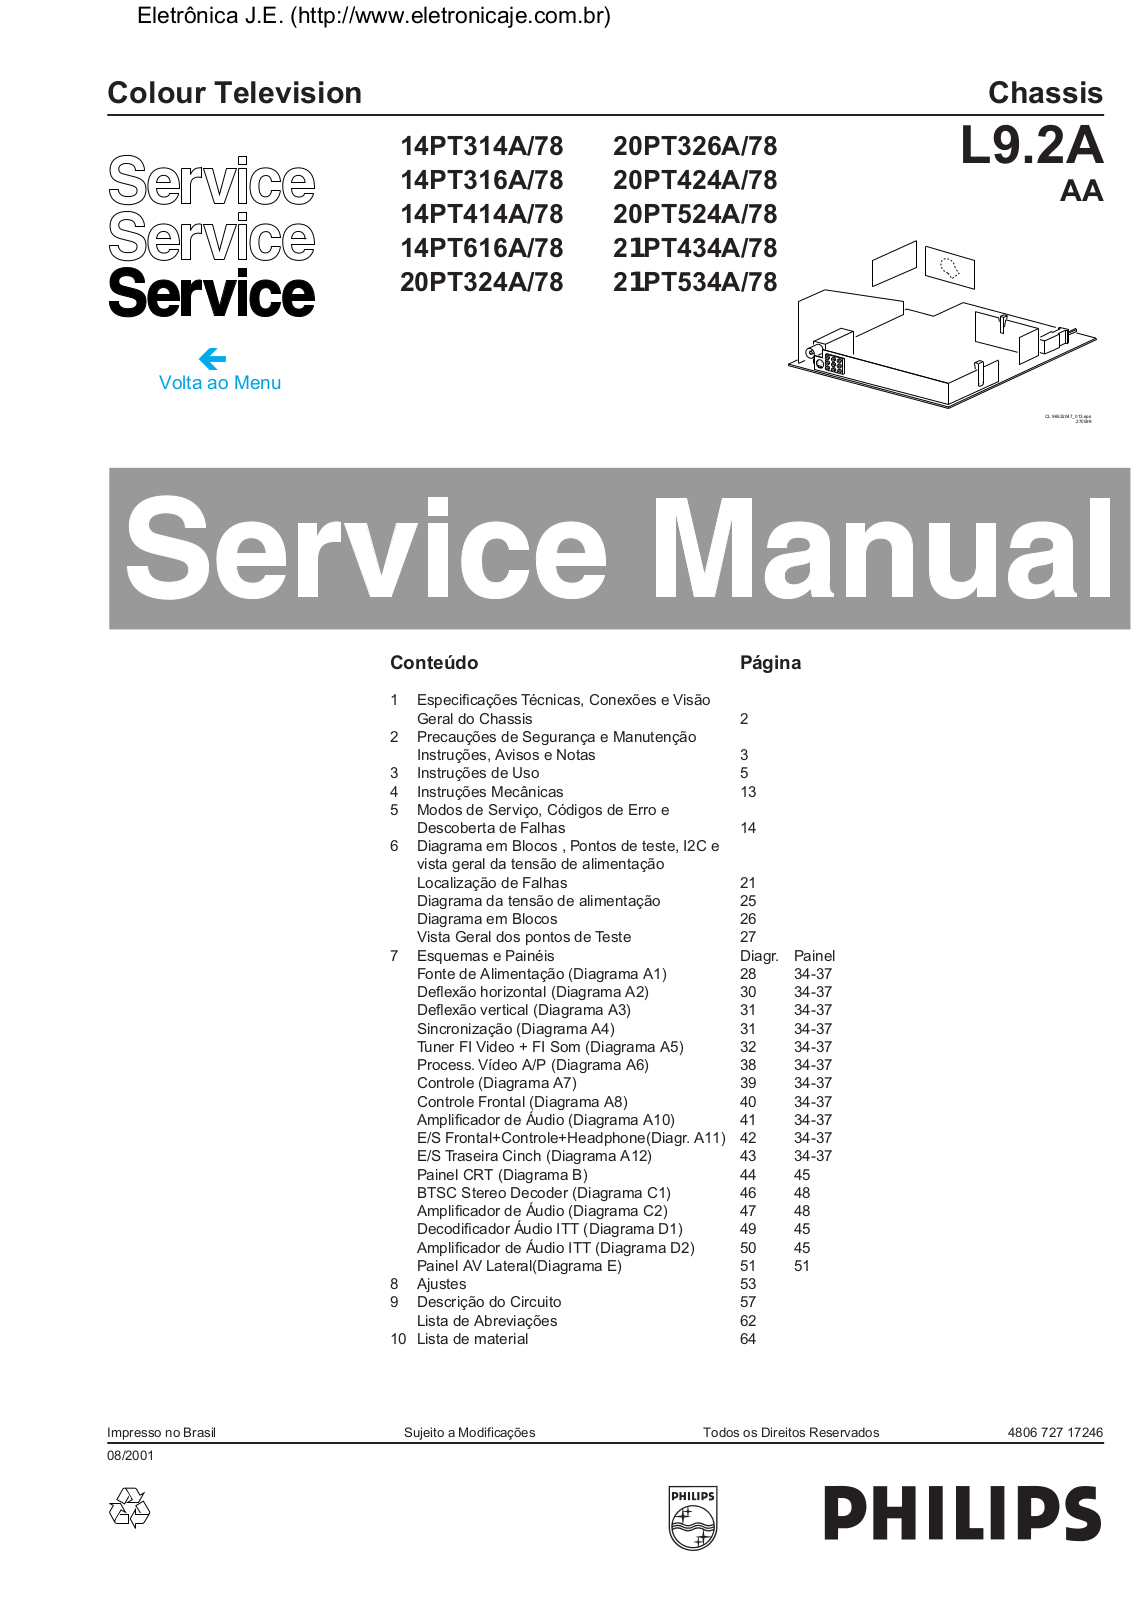 PHILIPS 14PT314A-78, 14PT316A-78, 14PT414A-78, 14PT616A-78, 20PT324A-78 Service Manual